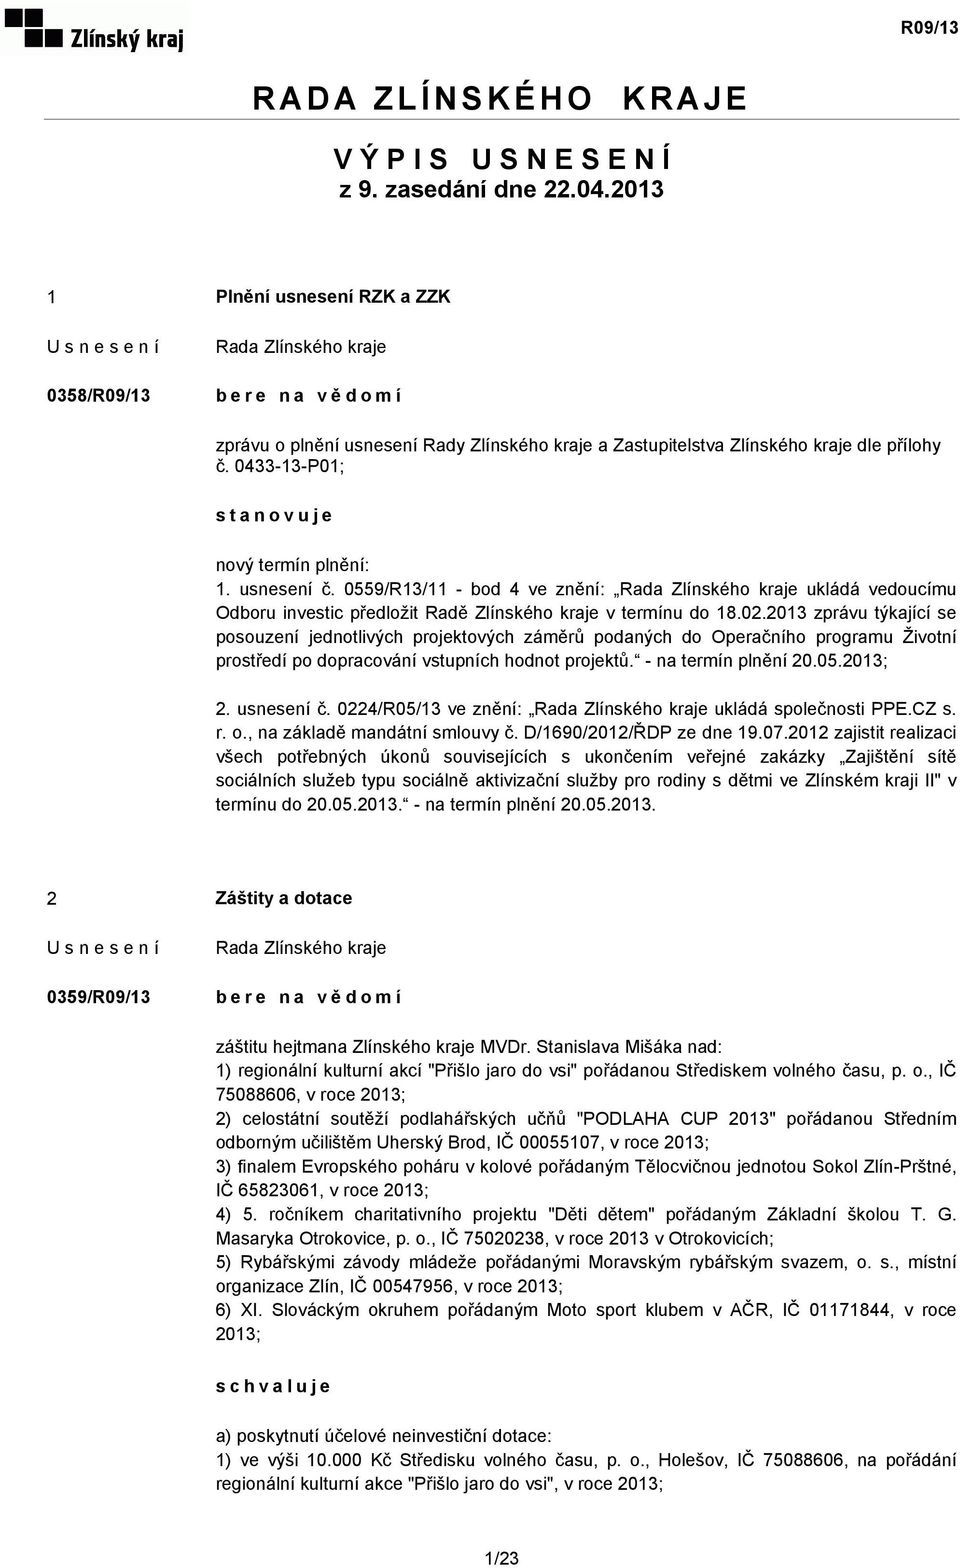 usnesení č. 0559/R13/11 - bod 4 ve znění: ukládá vedoucímu Odboru investic předložit Radě Zlínského kraje v termínu do 18.02.